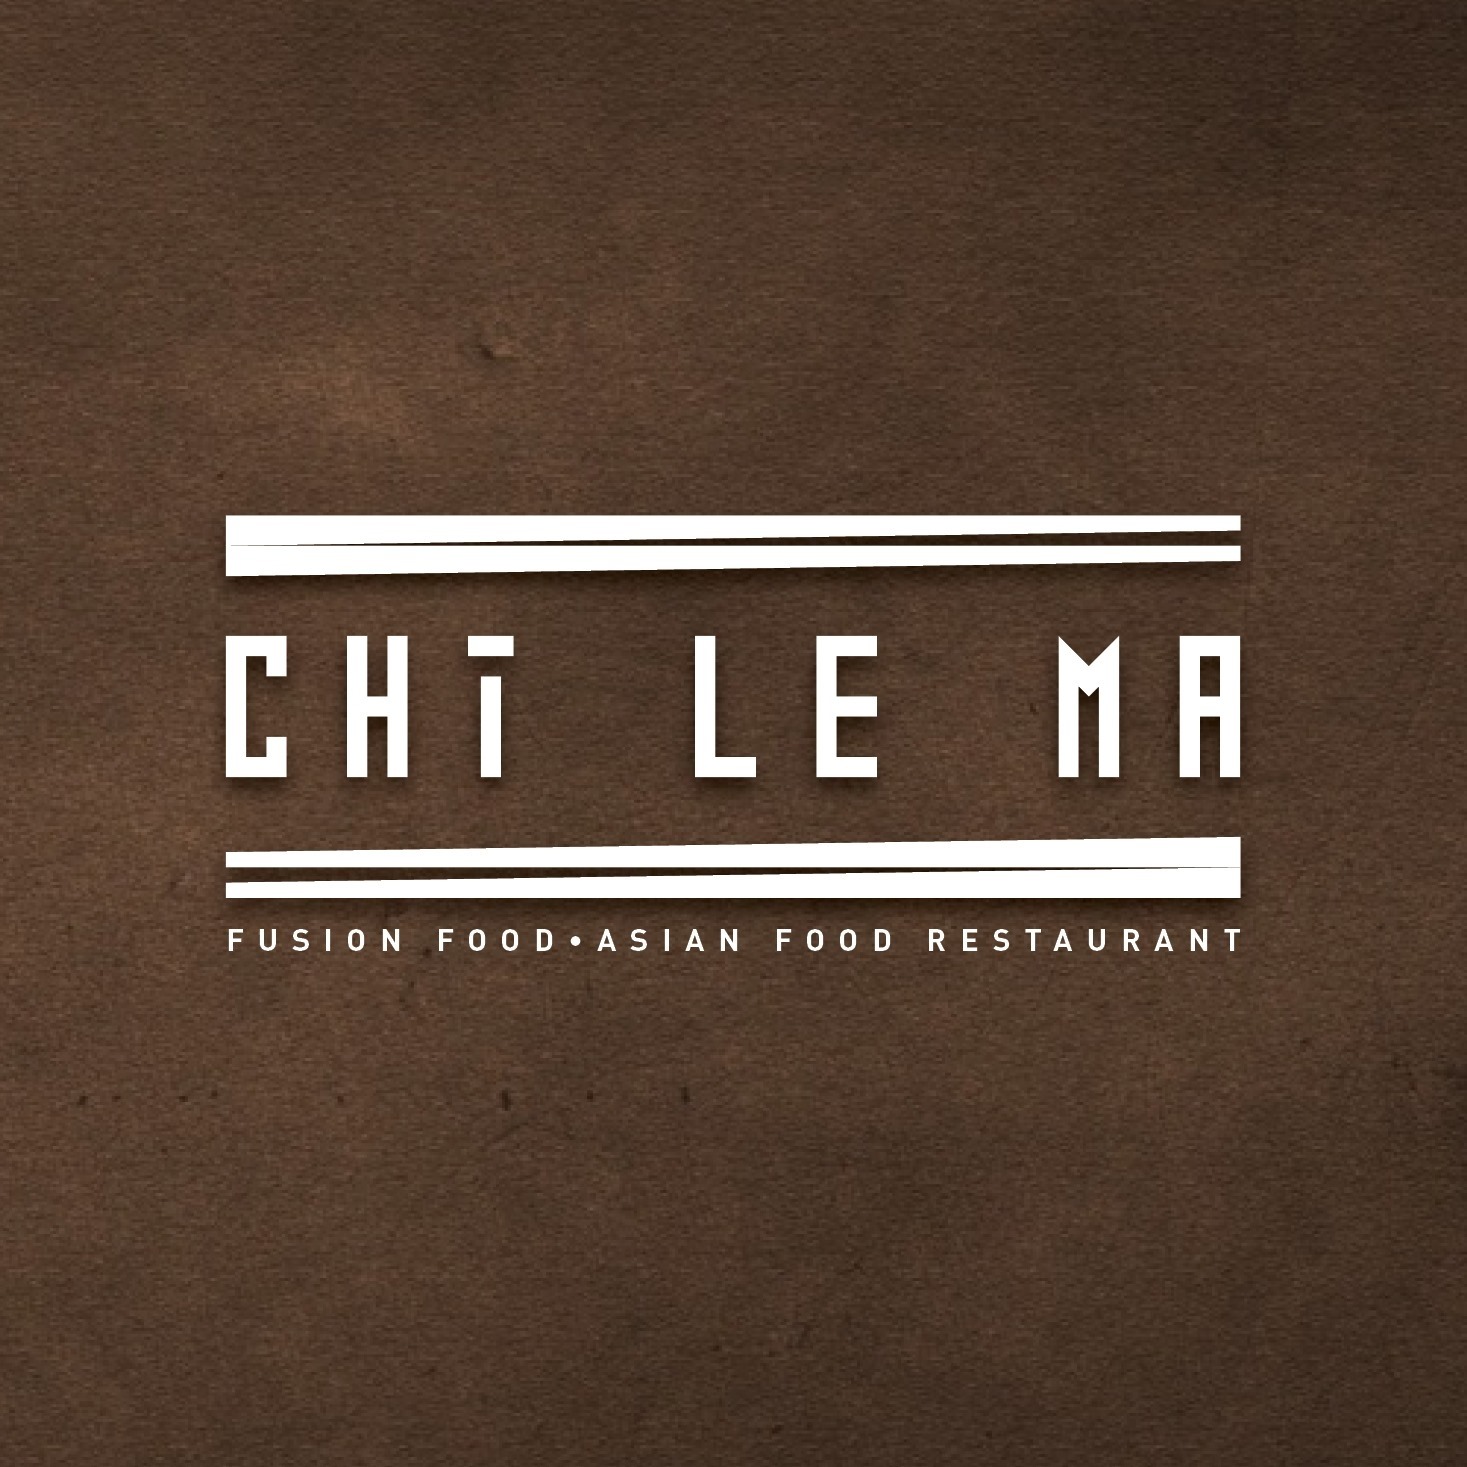 CHi LE MA Fusion Food